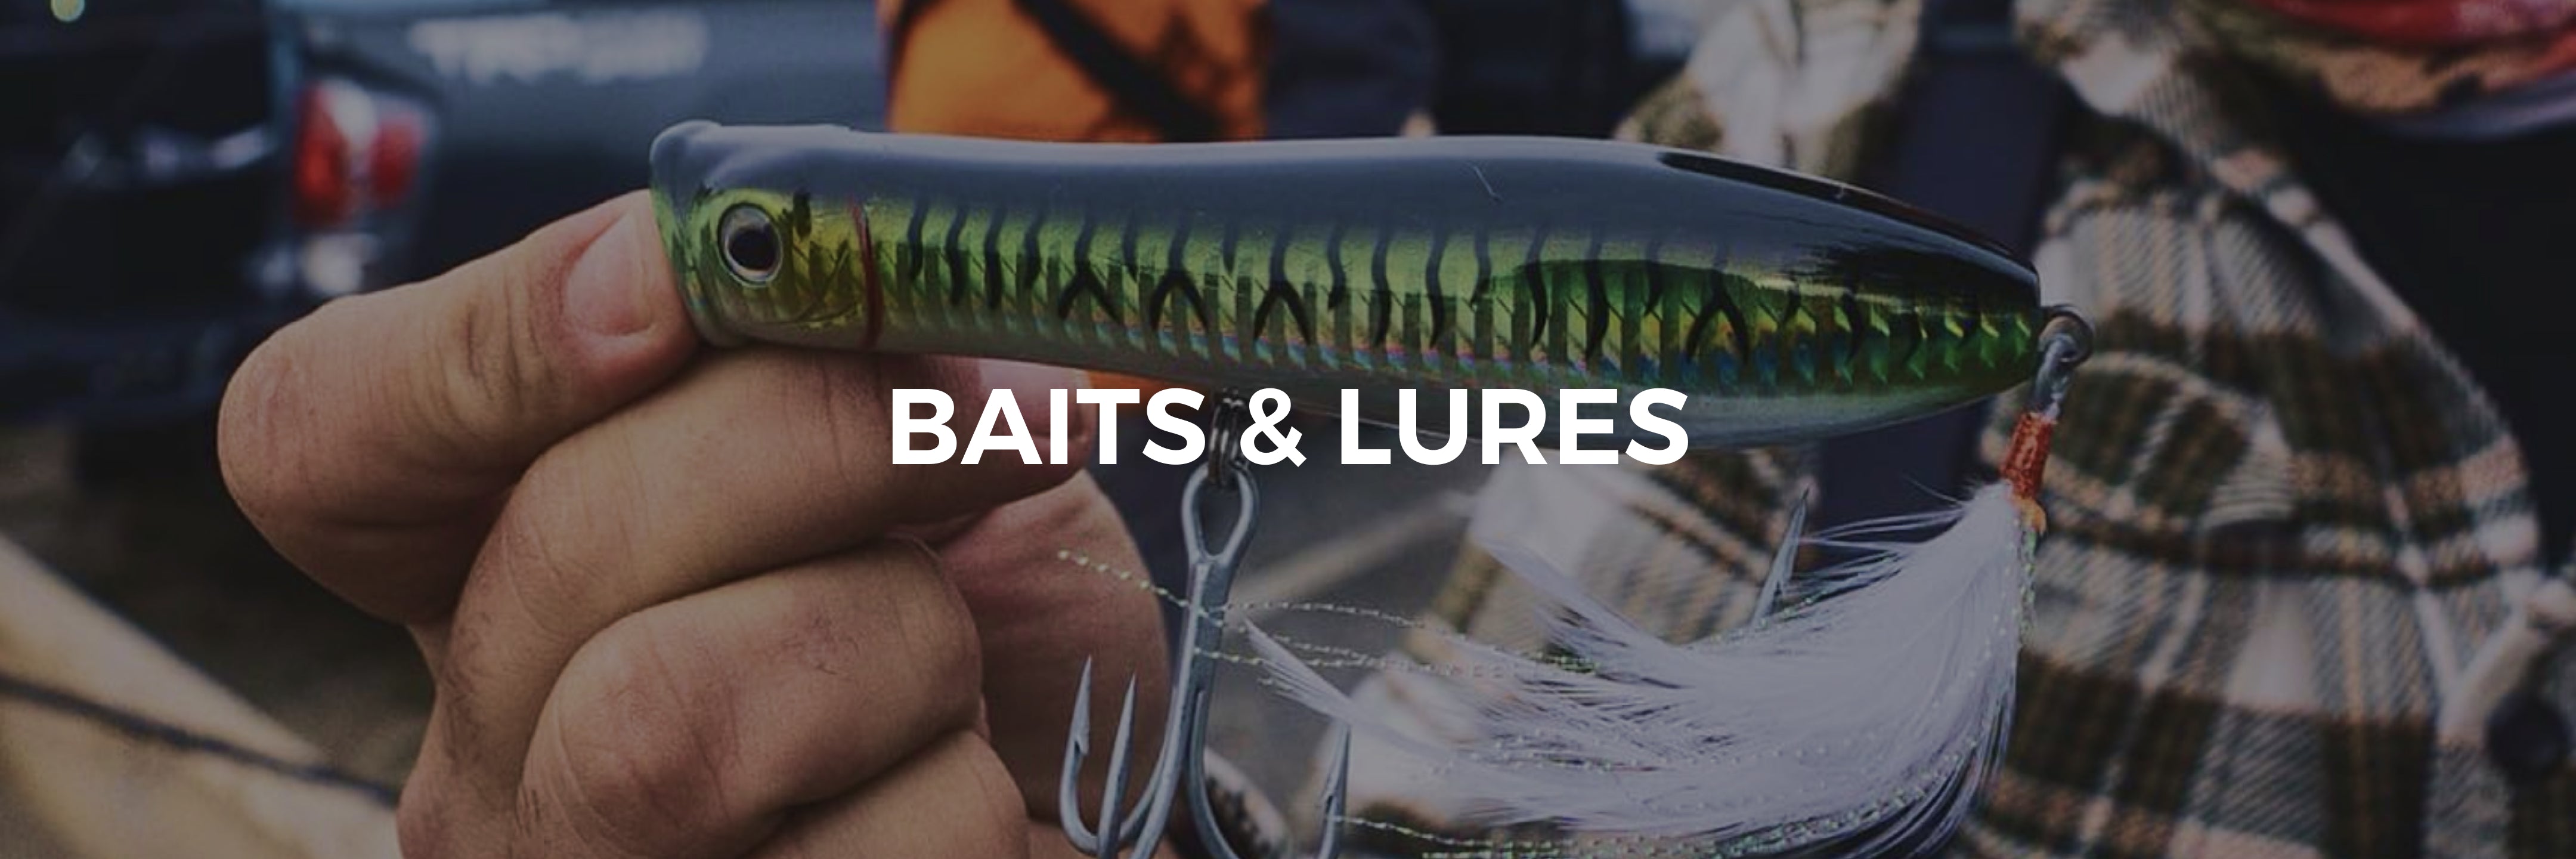 Baits & Lures  Tsunami Fishing & Tackle